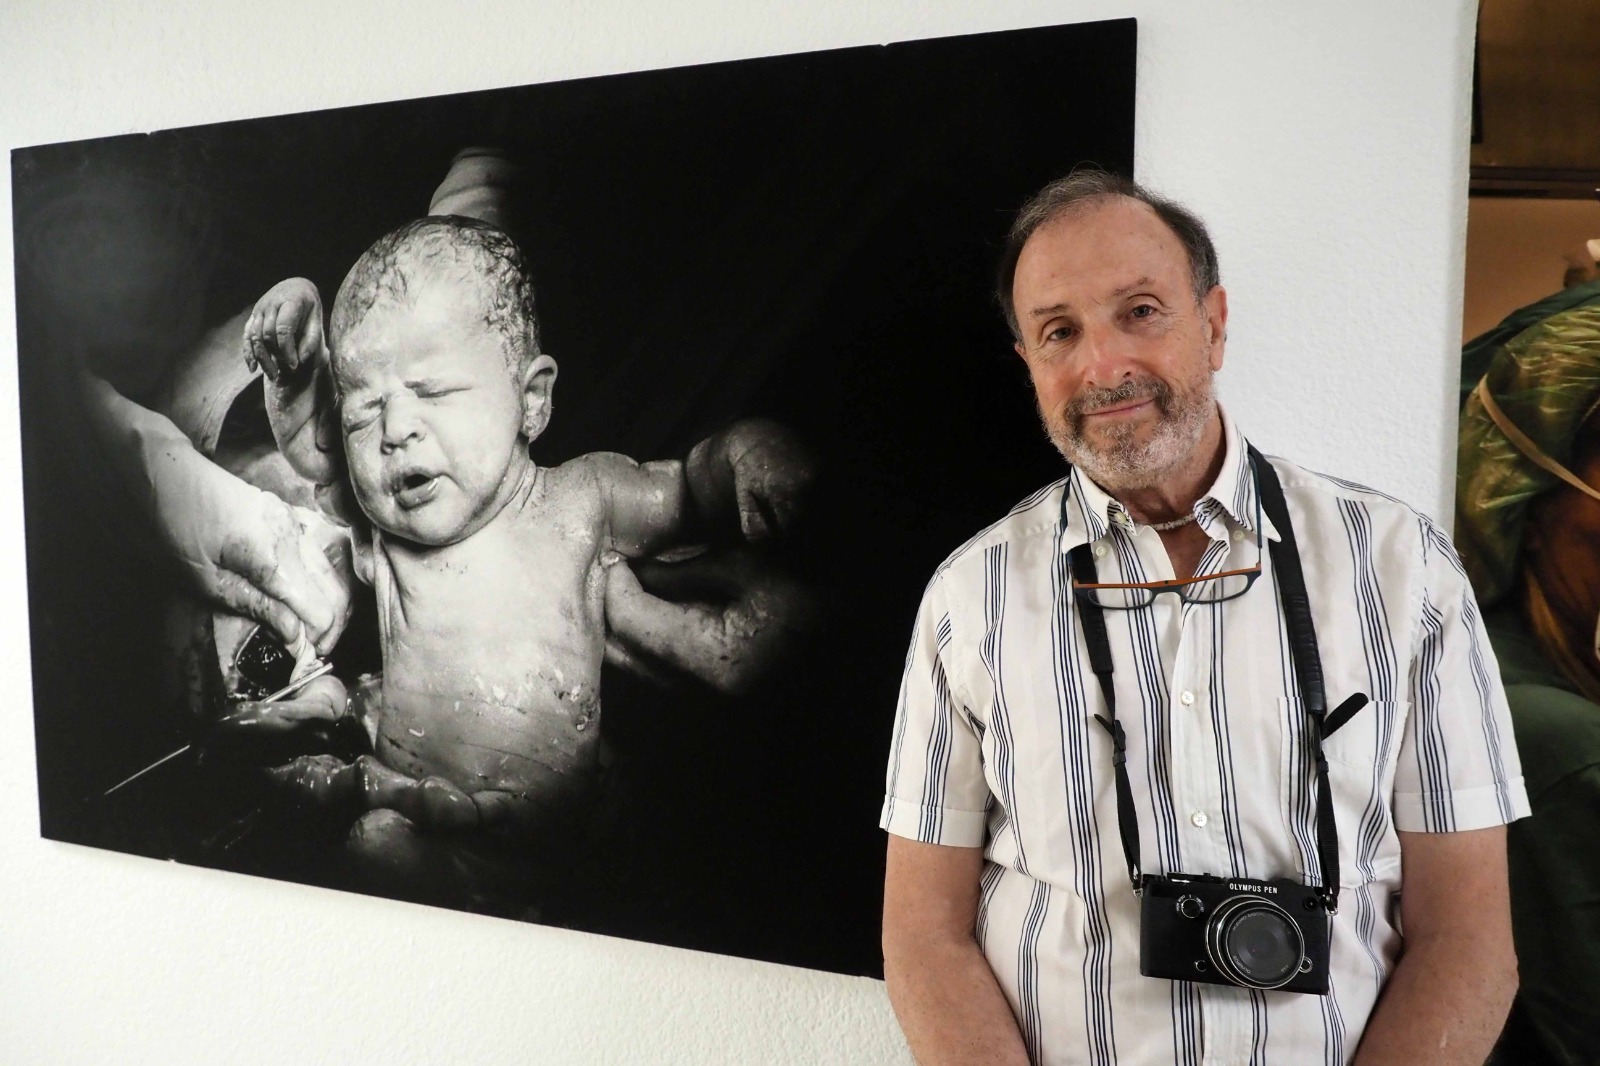 Tino Soriano y la fotografía sanitaria de "CURART" se exhiben en el Hospital Josep Trueta